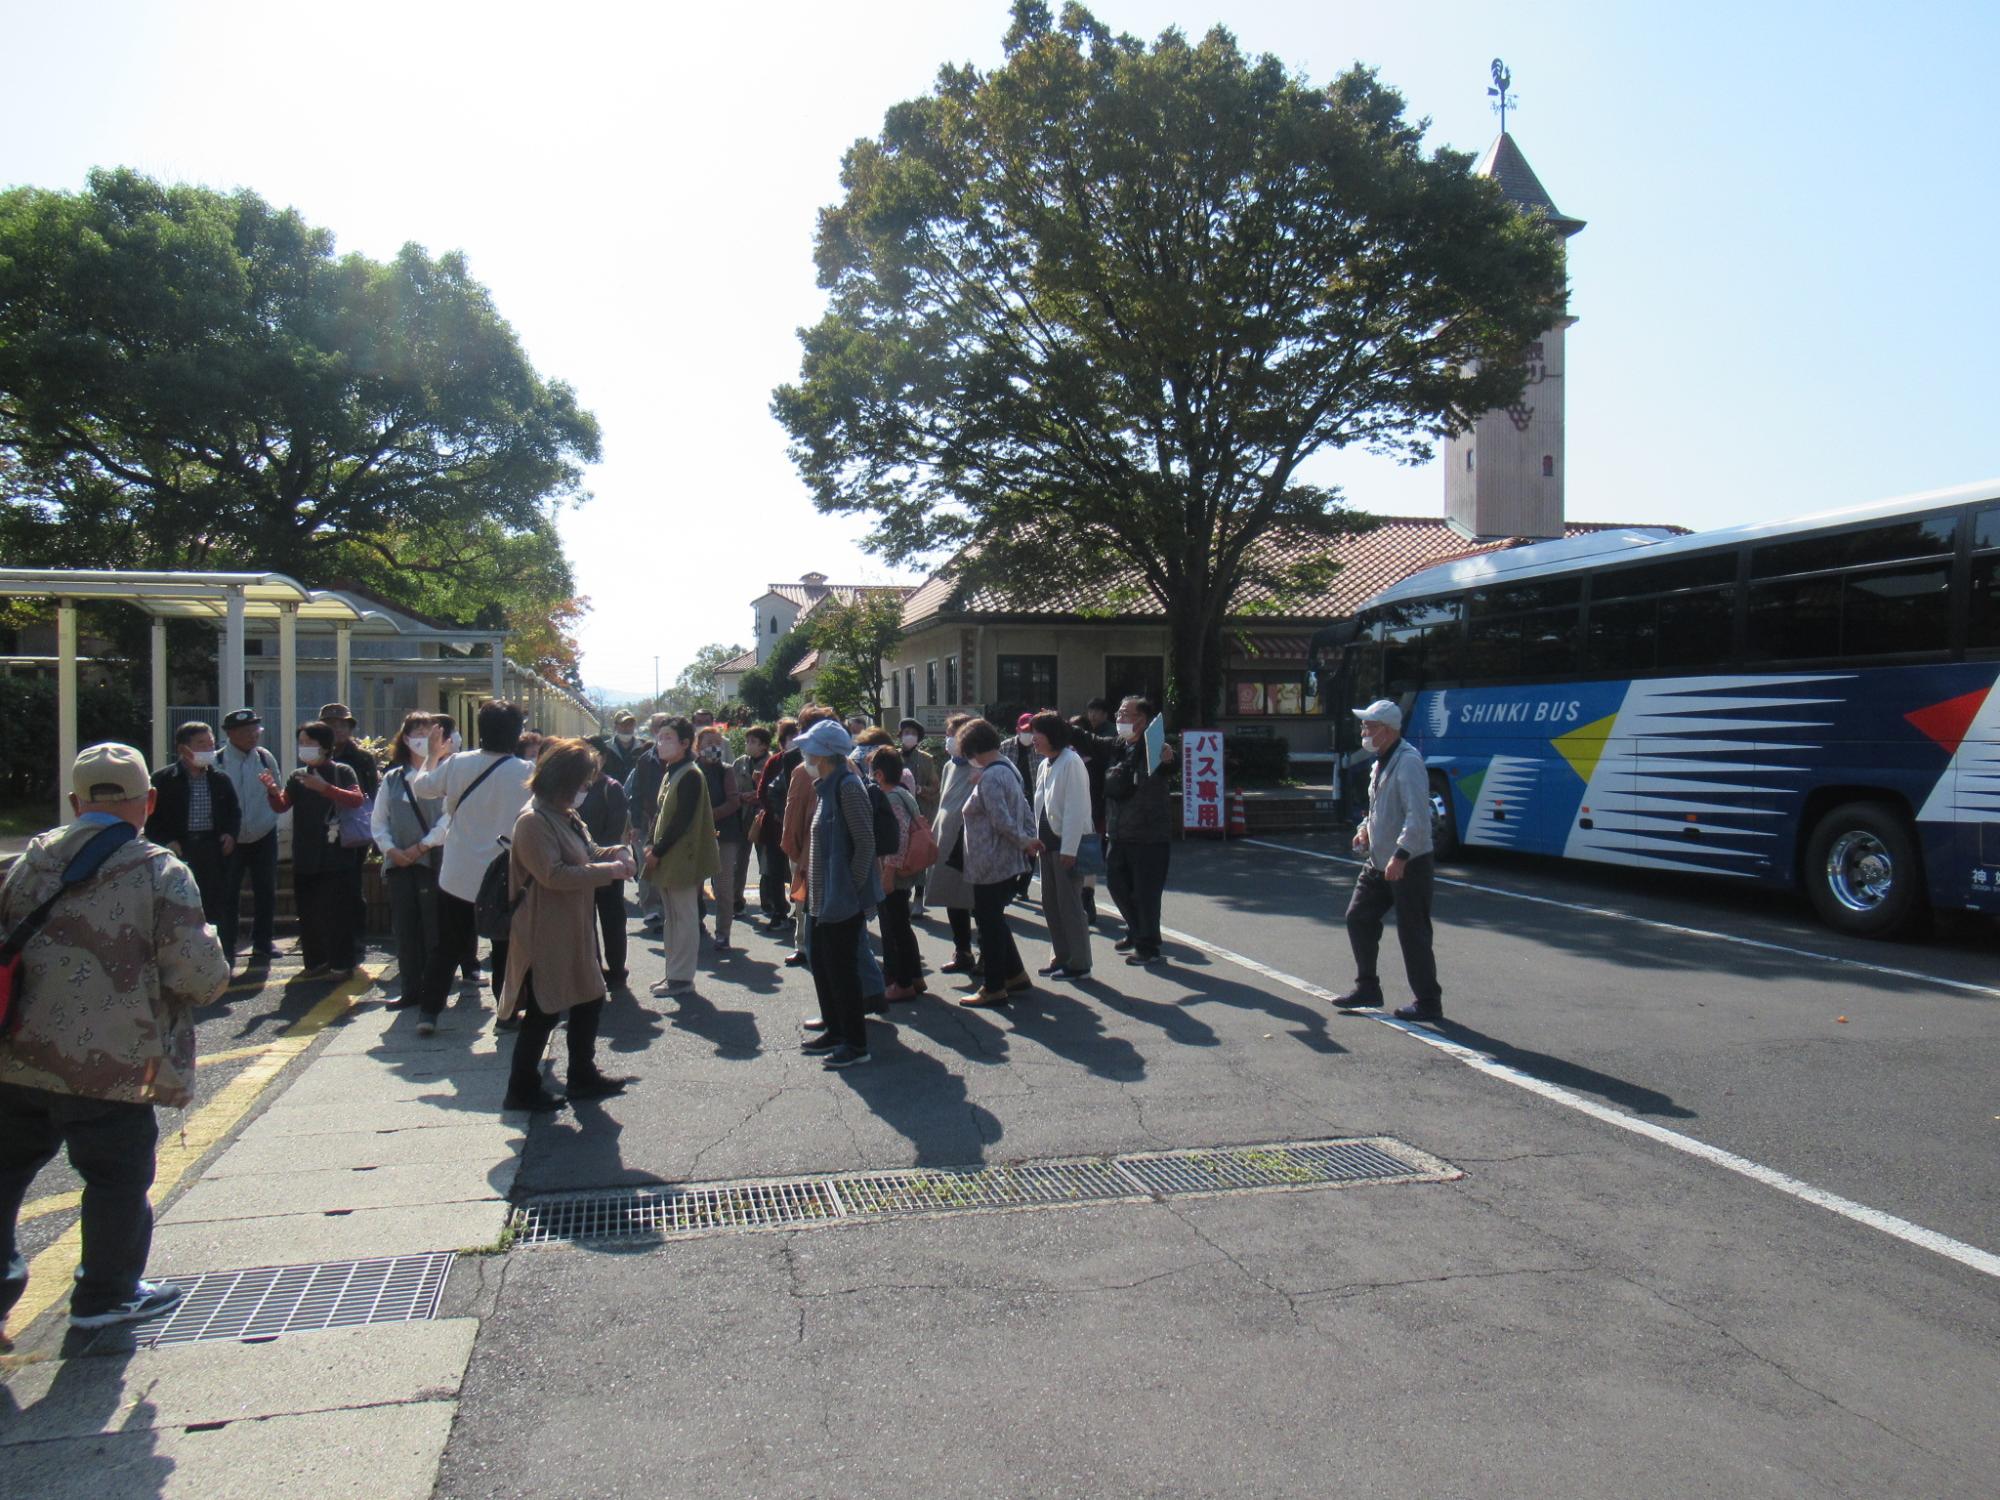 島根ワイナリーに到着したやまさき文化大学の受講者が移動に使っているバスから降車して集まっている写真